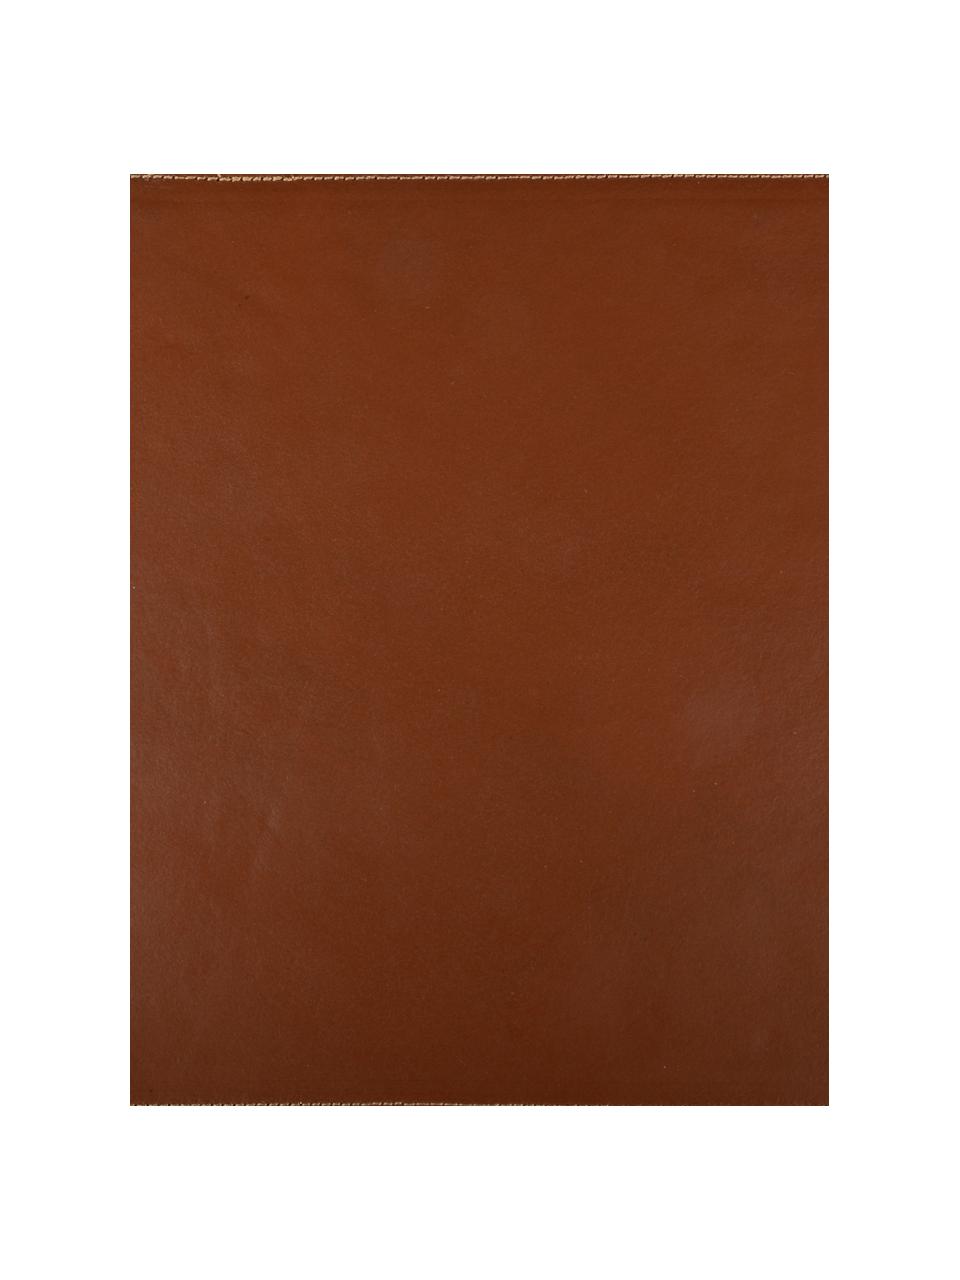 Leren placemat Buffalo, Buffelleer, Cognackleurig, 30 x 45 cm